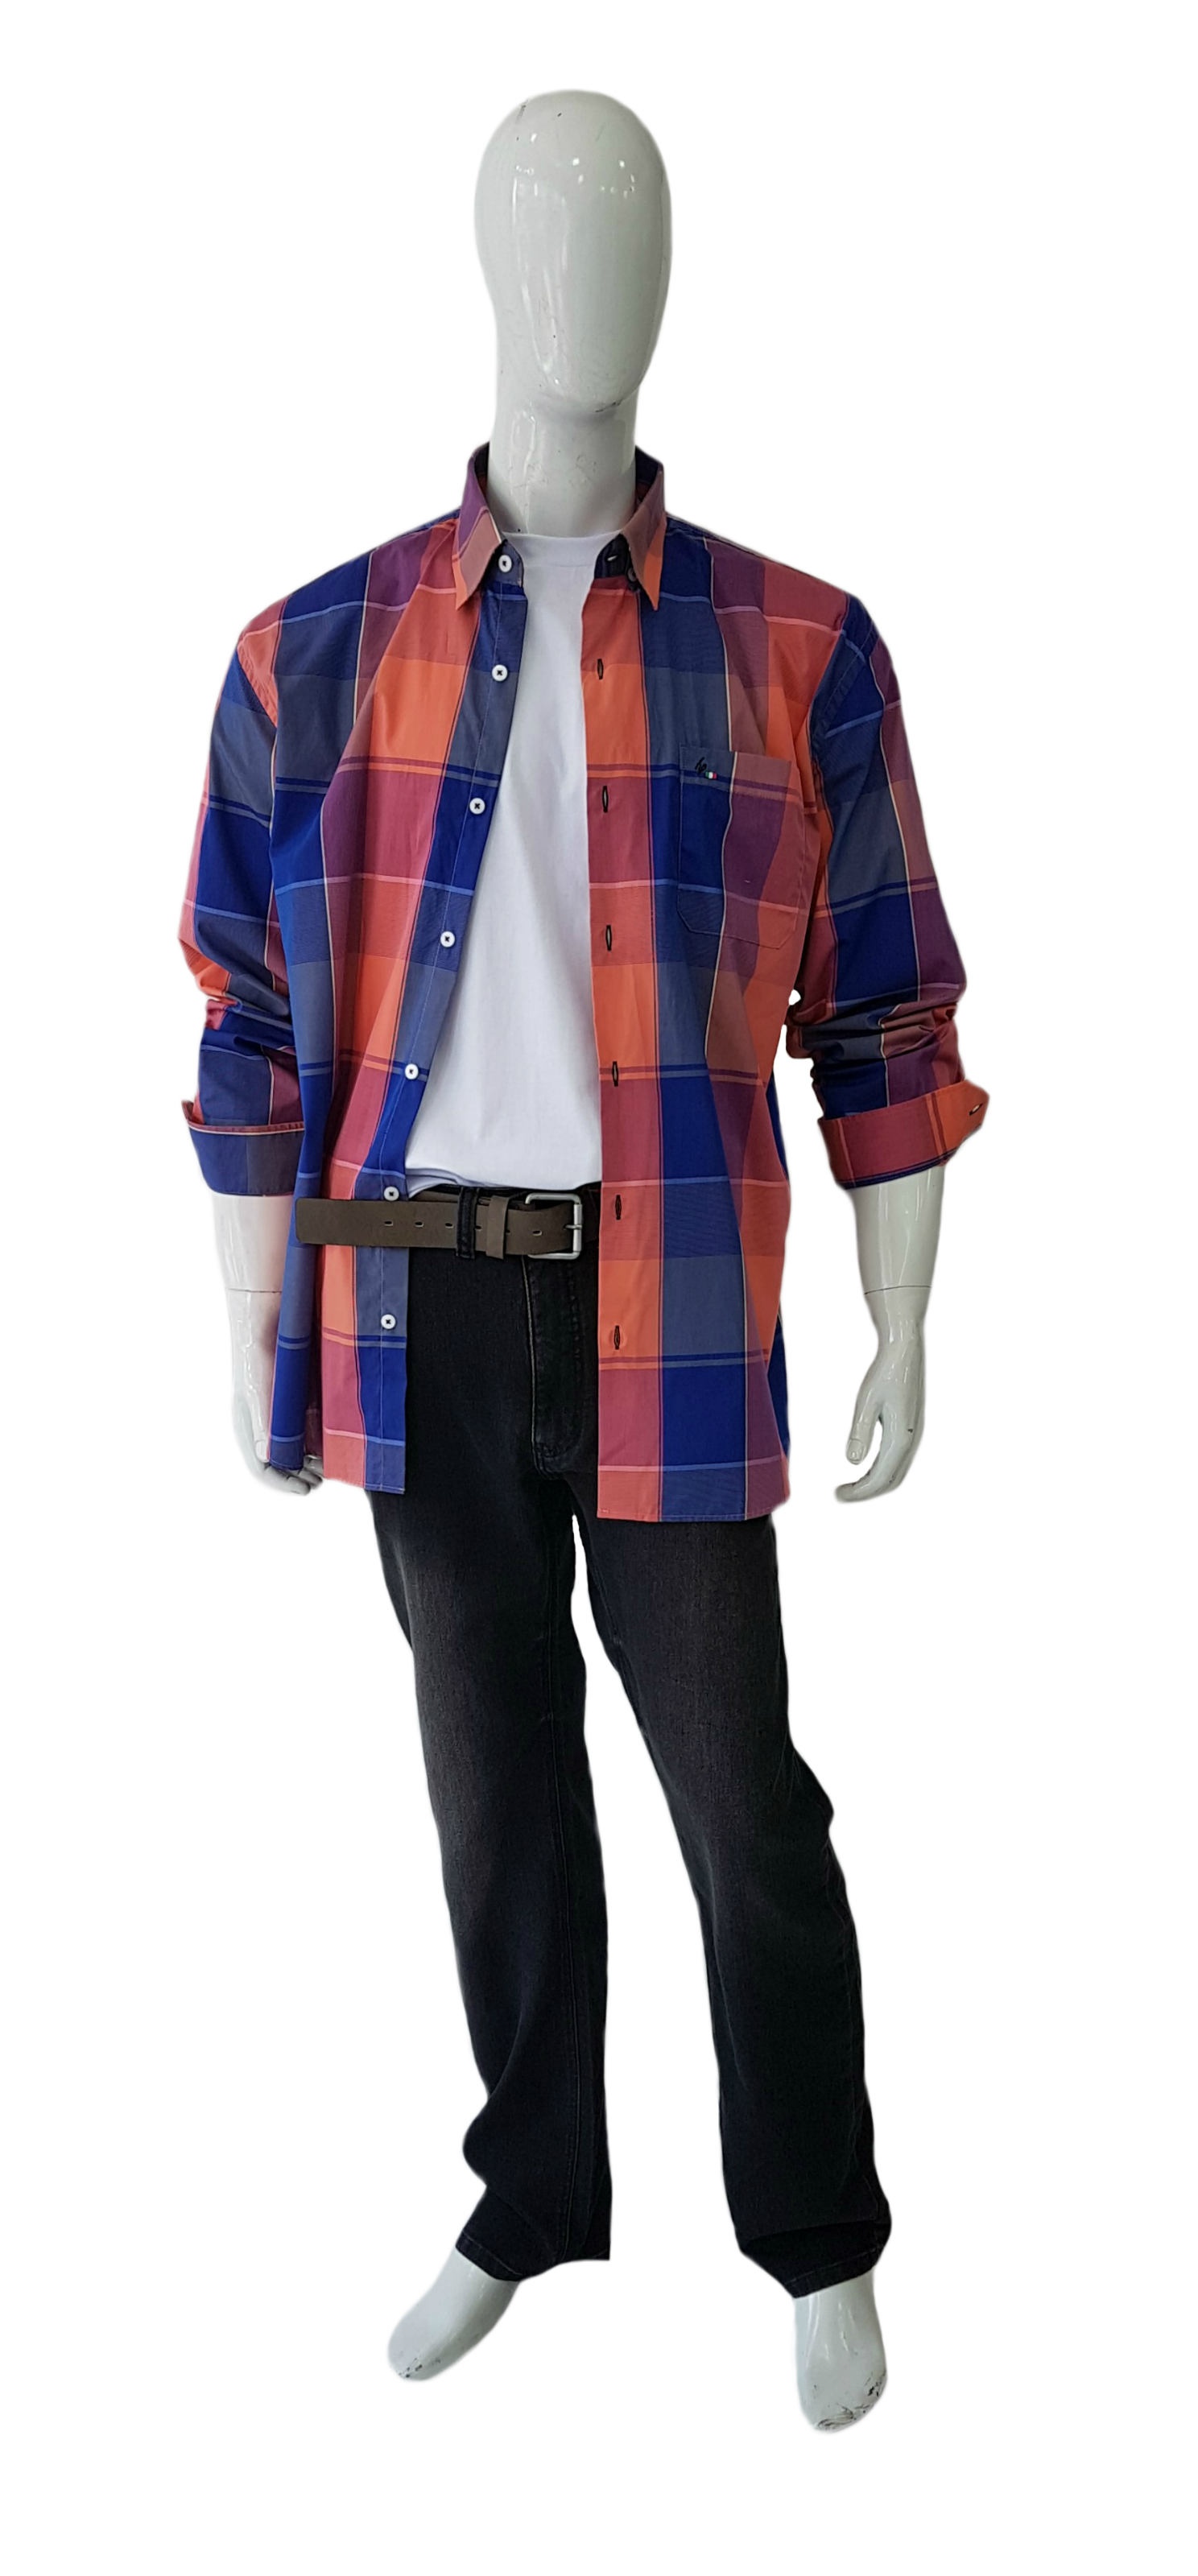 Camisa Plus Size Algodão Xadrez Ref 03112 / Calça Plus Size Jeans Ref 03073